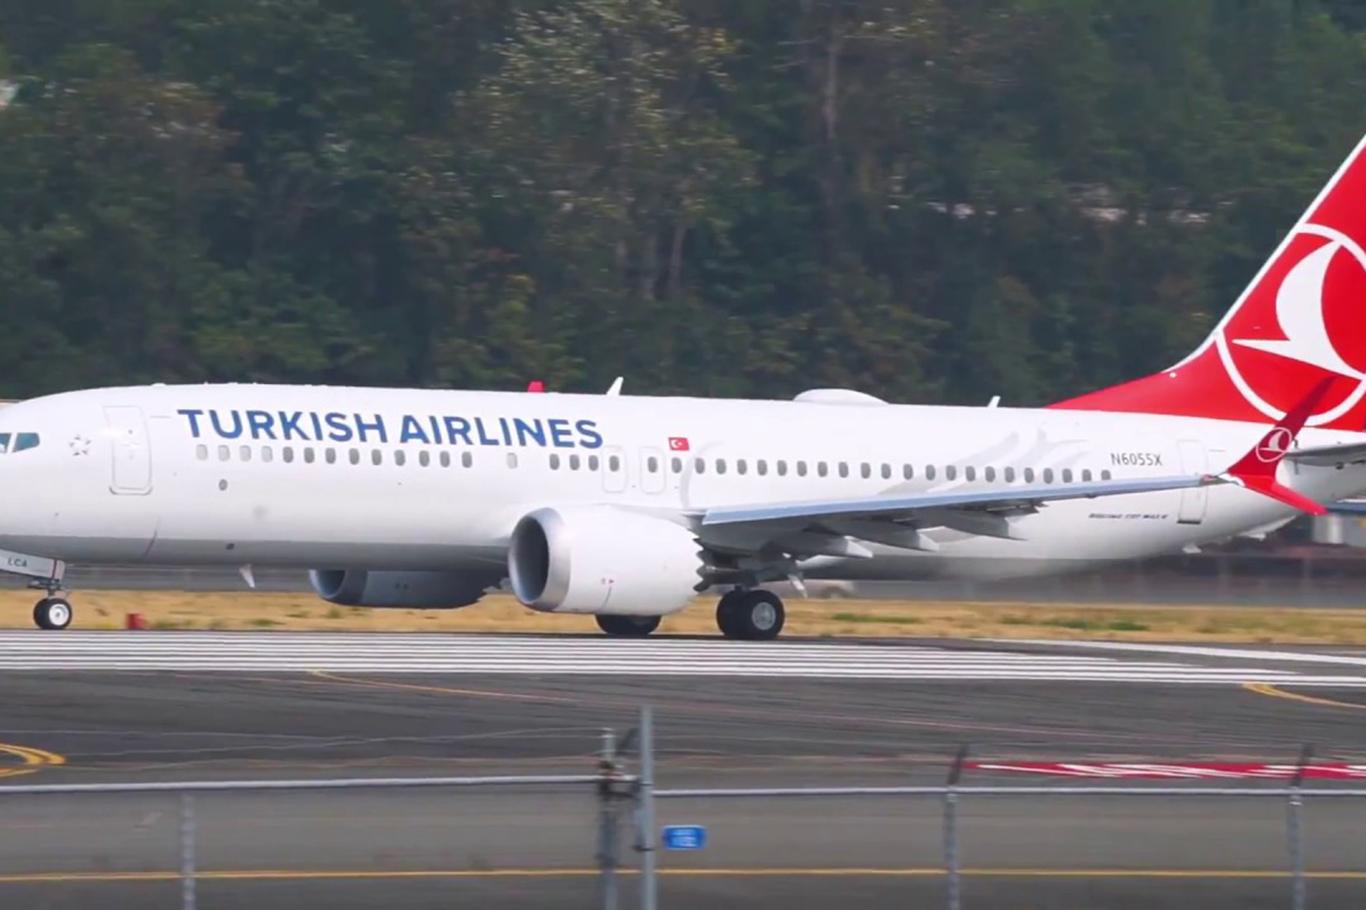 Boeing 737 MAX uçakları Türkiye'nin hava sahasına giremeyecek